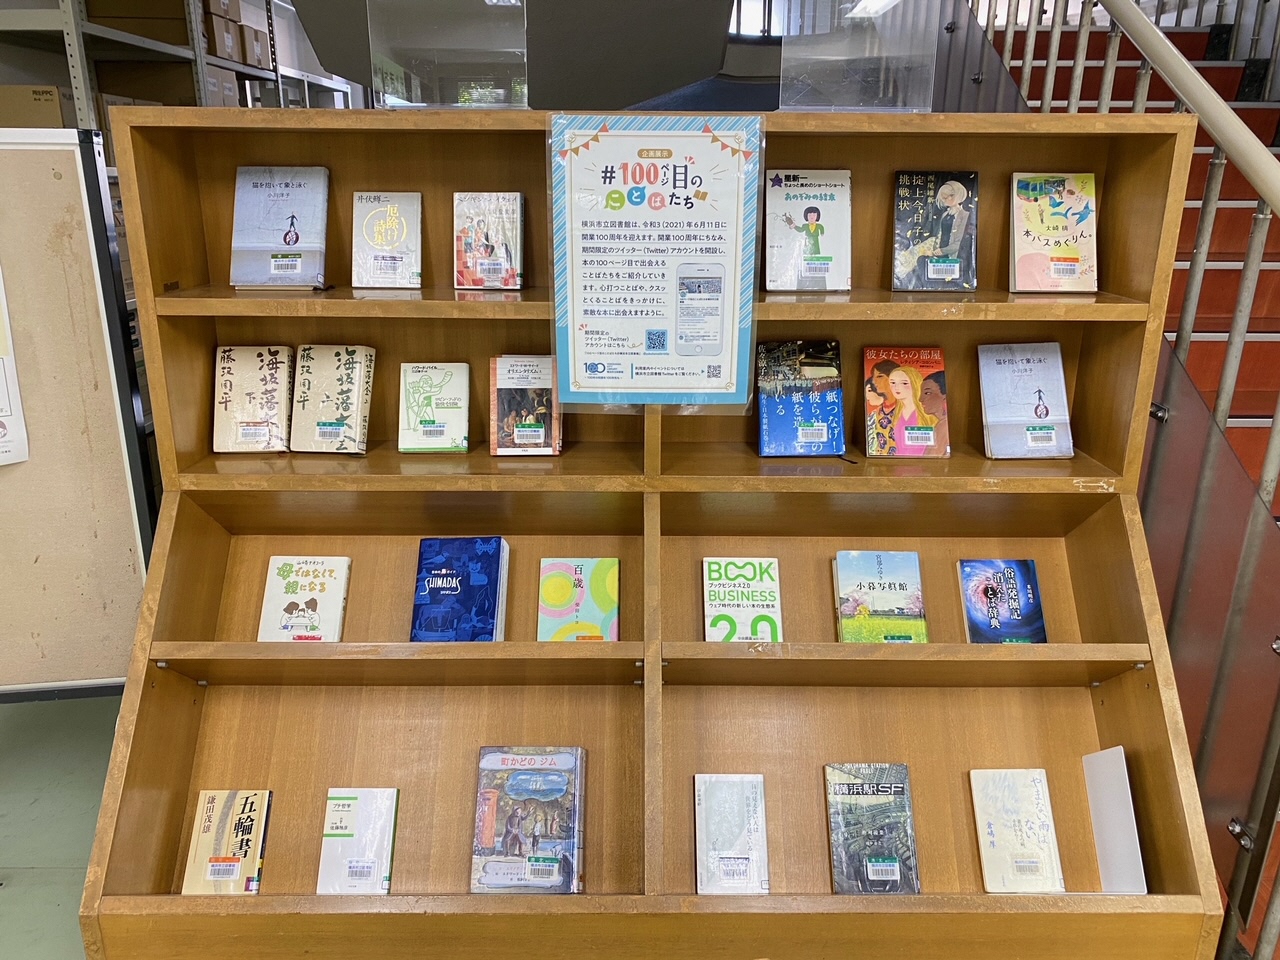 横浜市立図書館 港北図書館のお知らせ 市立図書館 開業100周年を記念した 100ページ目のことばたち 展示を開催中です 1階まちの情報コーナーにて 10月31日 日 まで 心打つことばをきっかけに 素敵な本に出会えますように 横浜市港北図書館